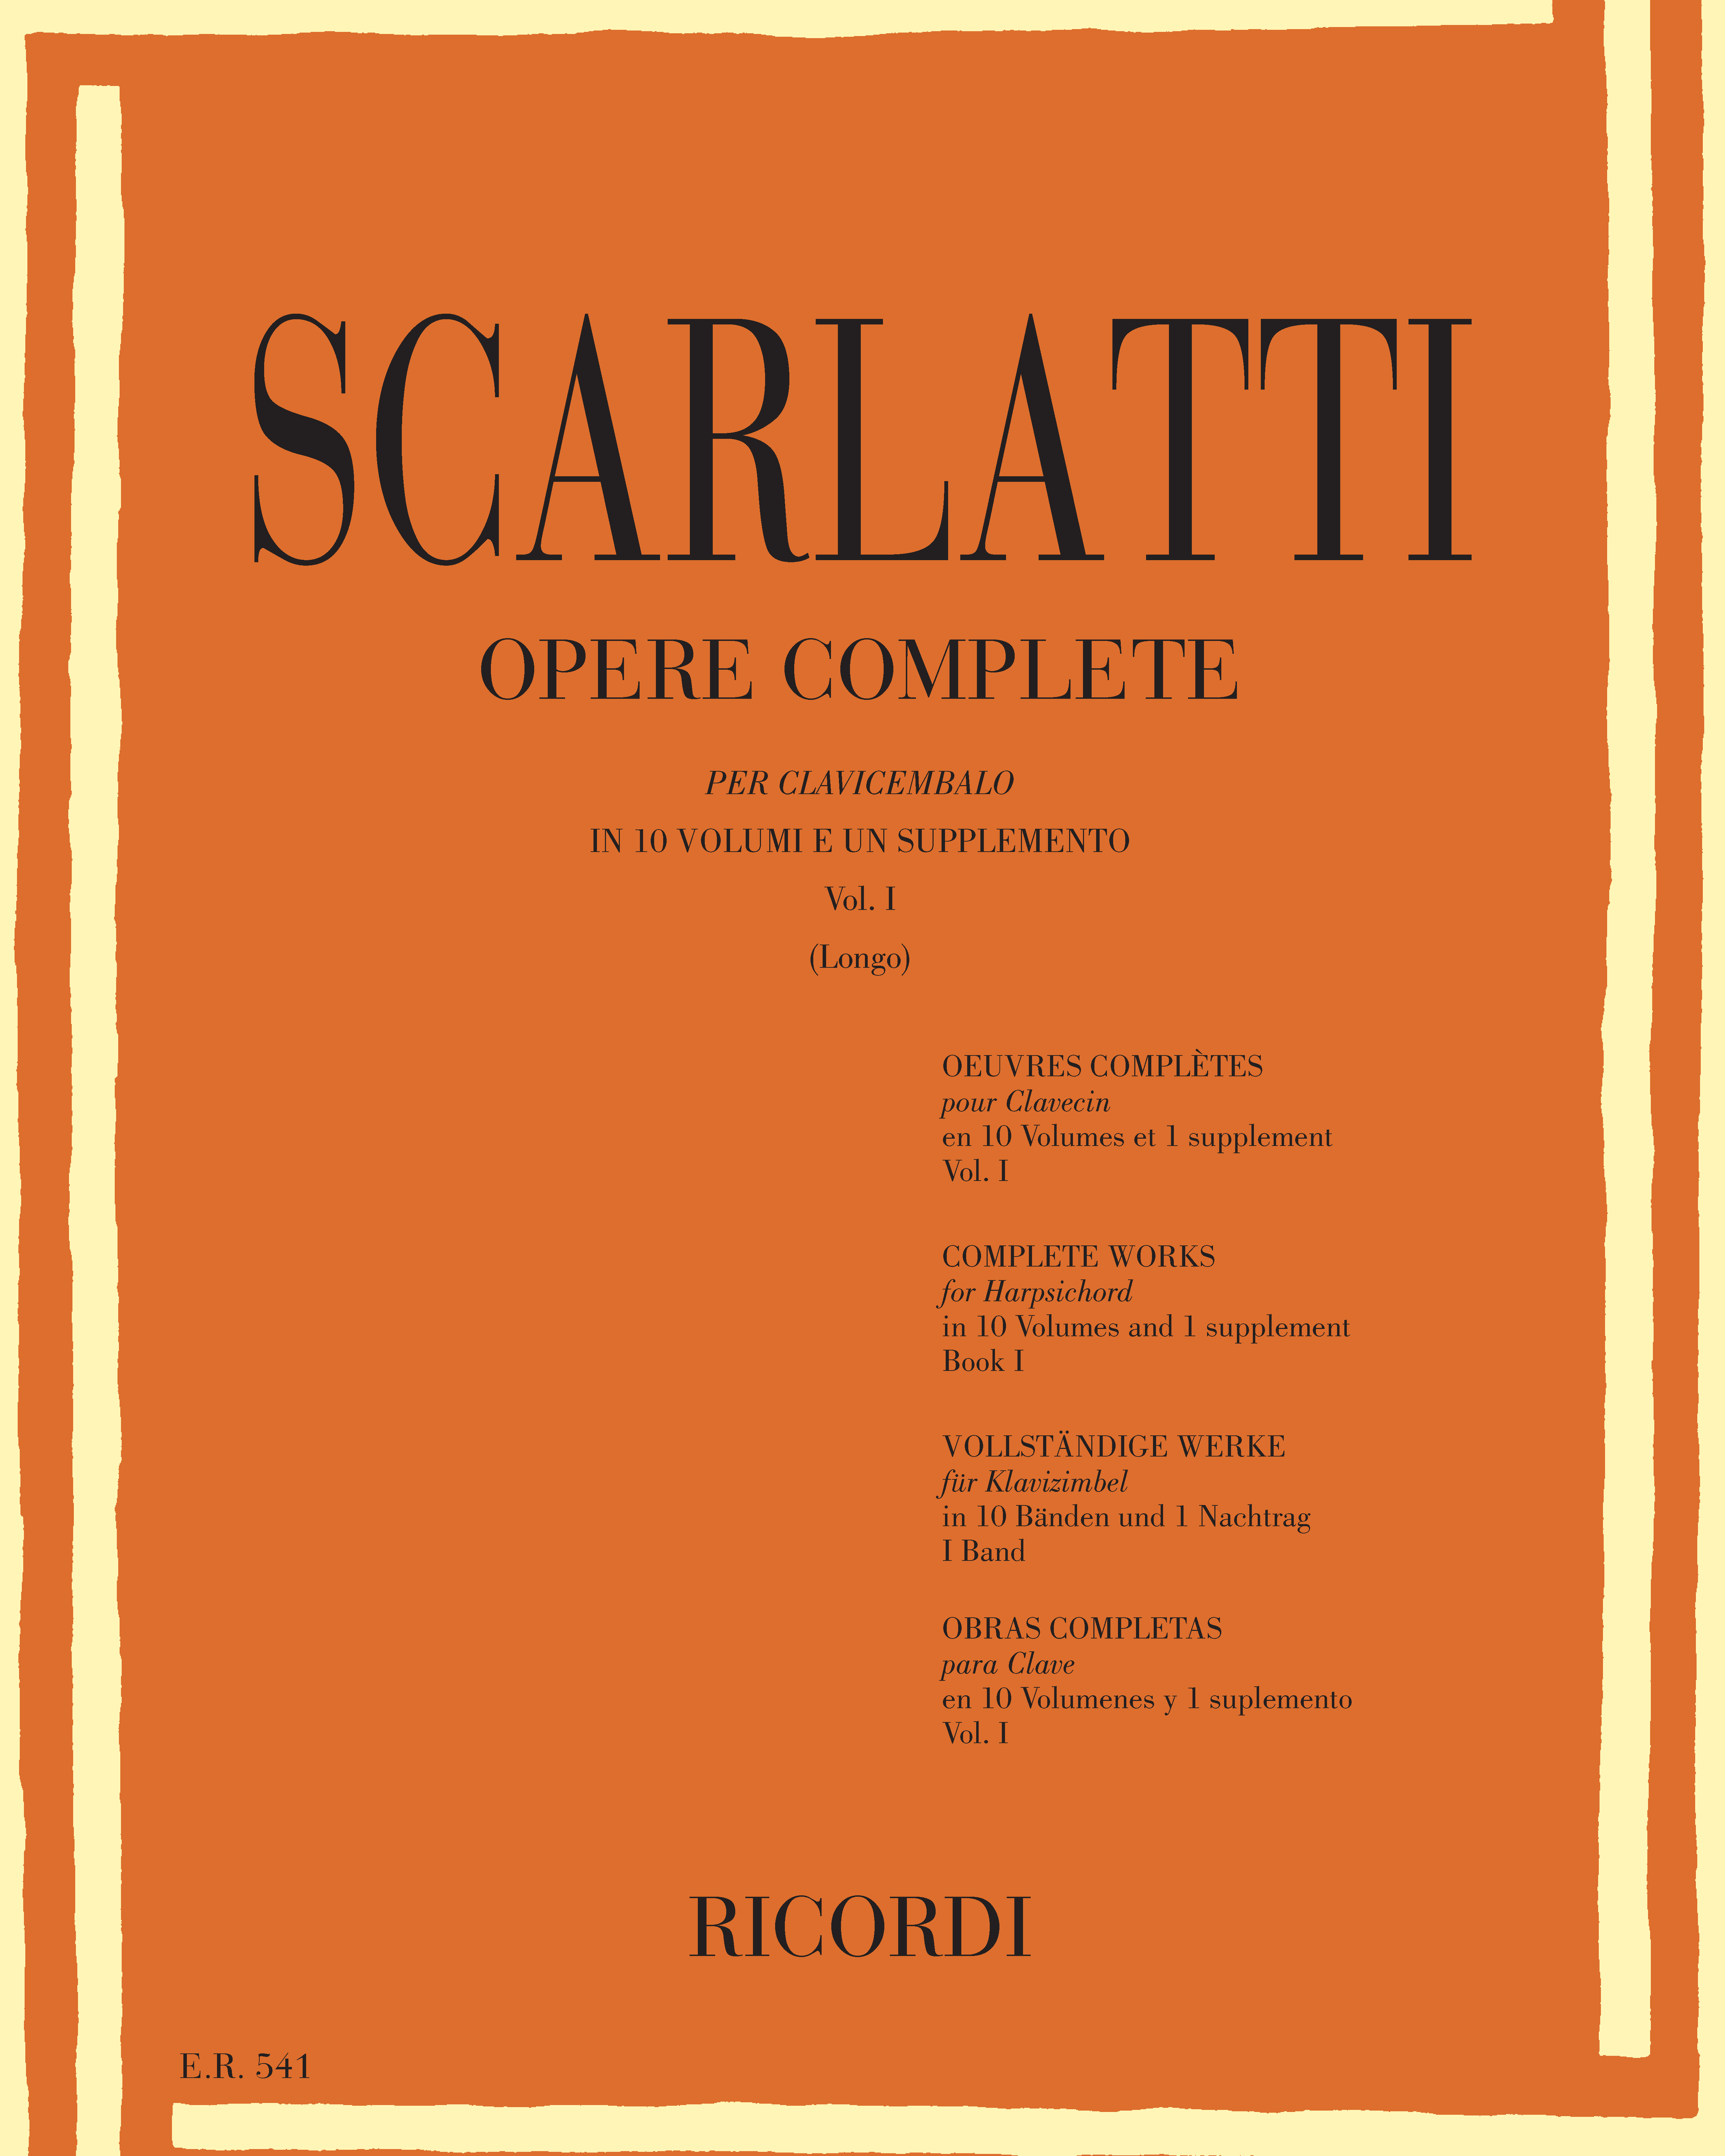 Opere complete per clavicembalo Vol. 1